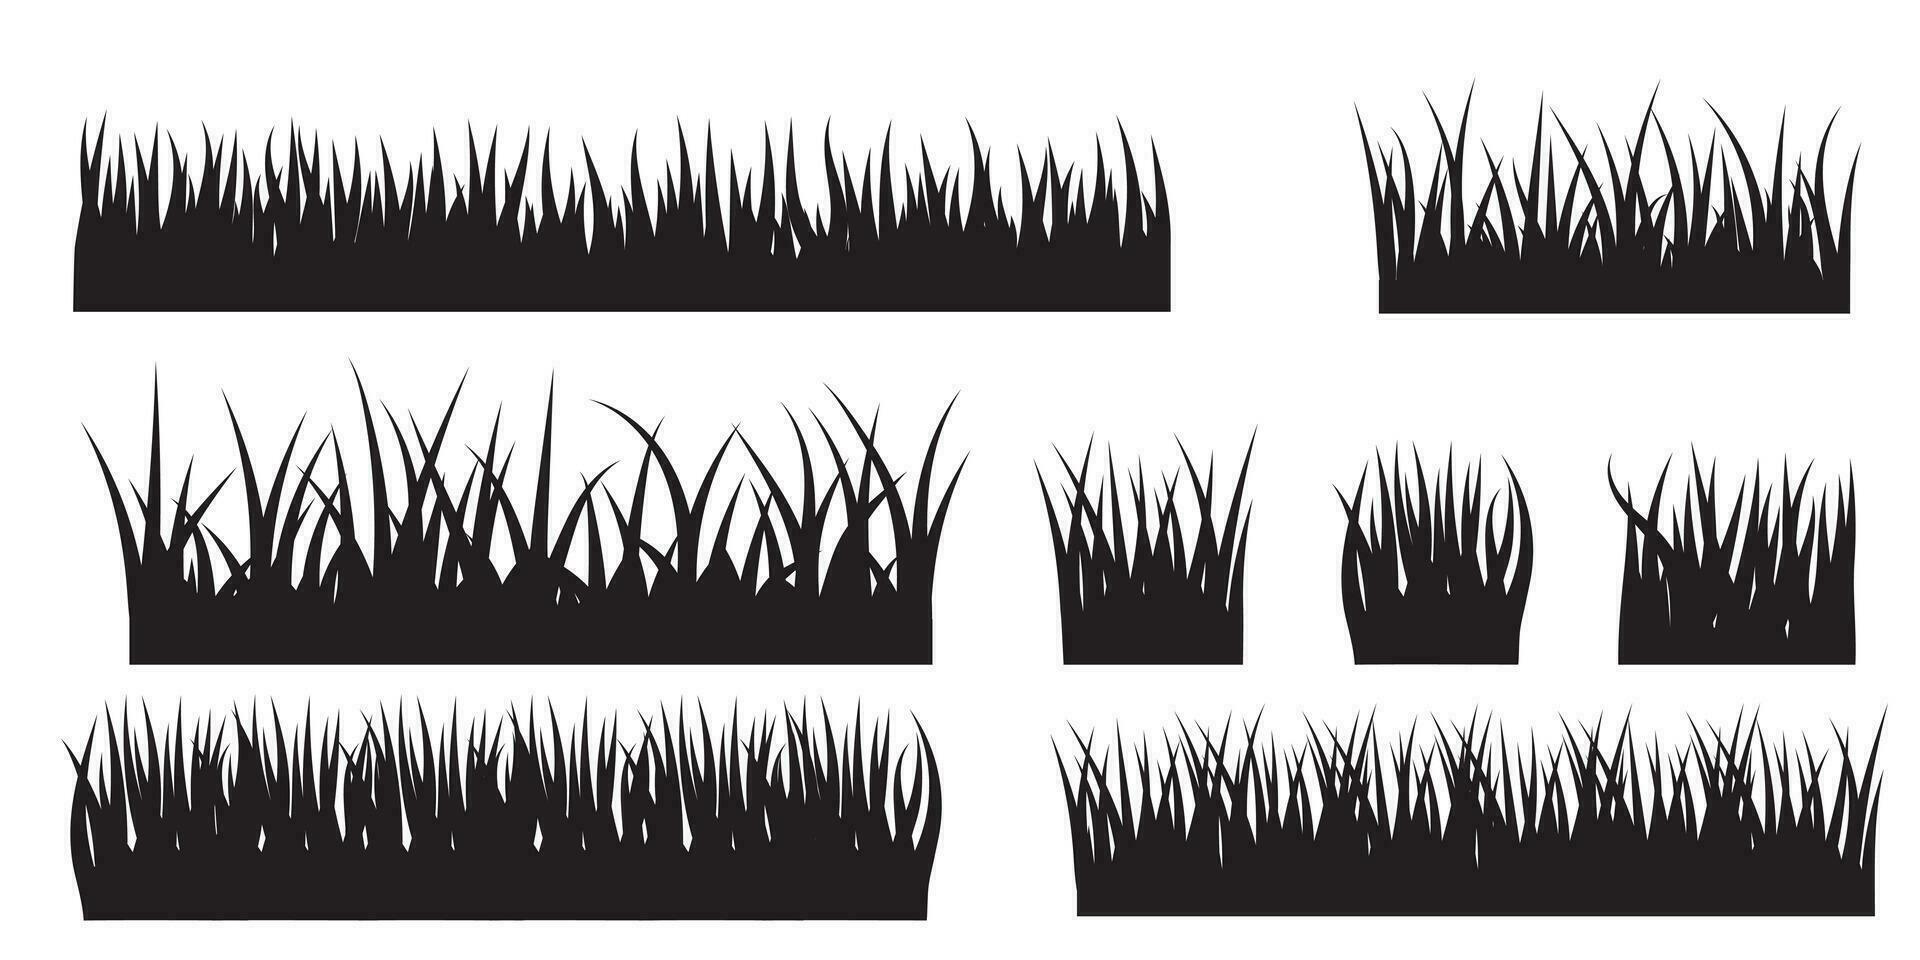 vektor uppsättning av gräs silhuetter isolerat på vit bakgrund. naturlig, eko, bio, organisk design element.